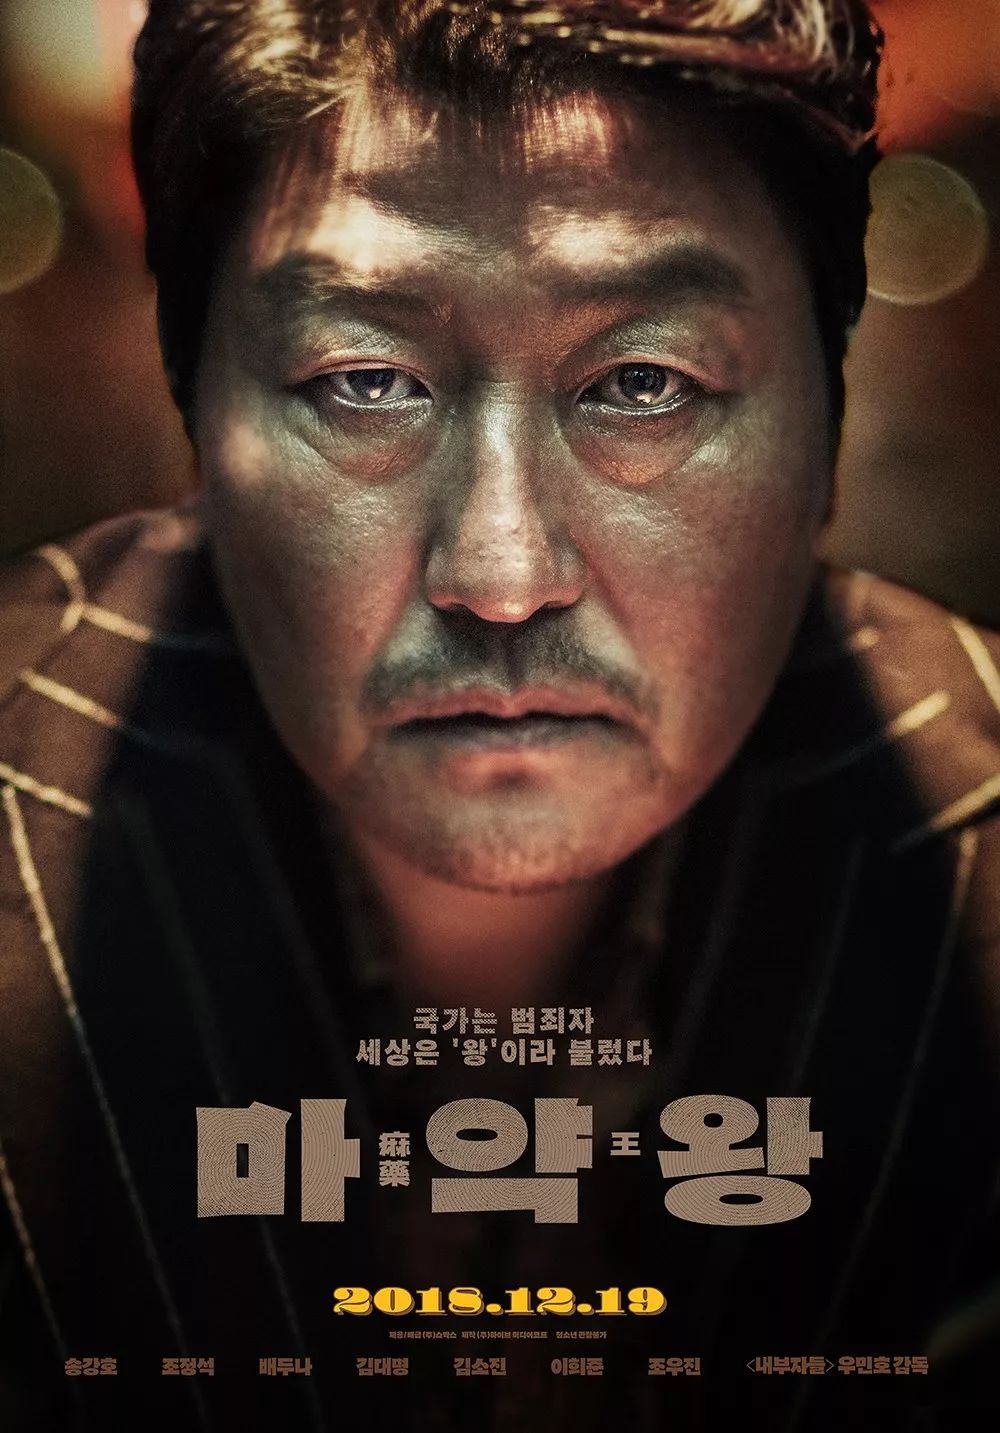 韩国设计师Park siyoung电影海报作品集